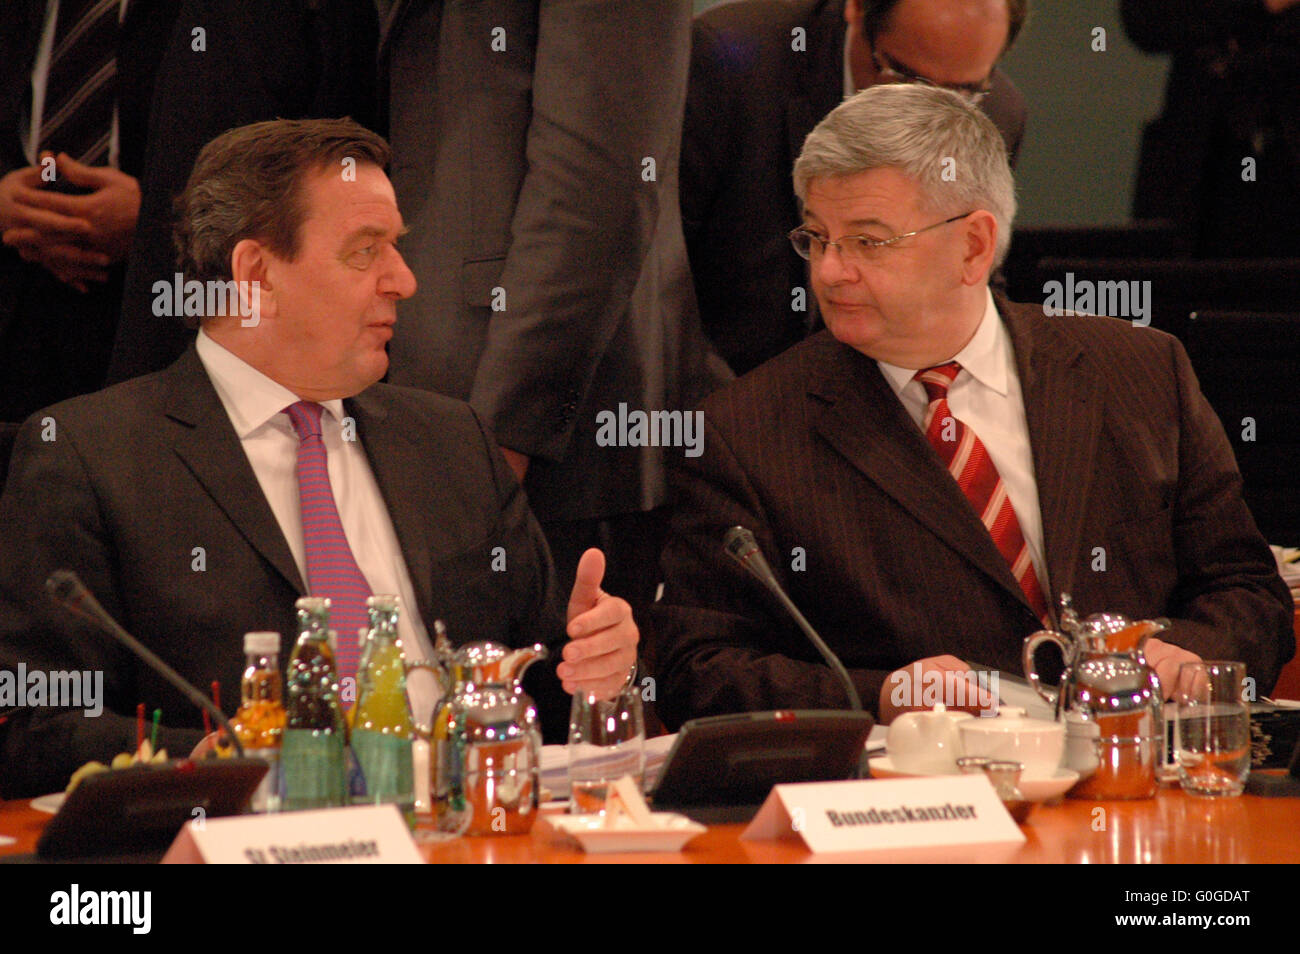 Bundeskanzler Gerhard Schroeder, Aussenminister Joschka Fischer - Treffen des Bundeskanzlers und Mitgliedern der Bundesregierung Stock Photo